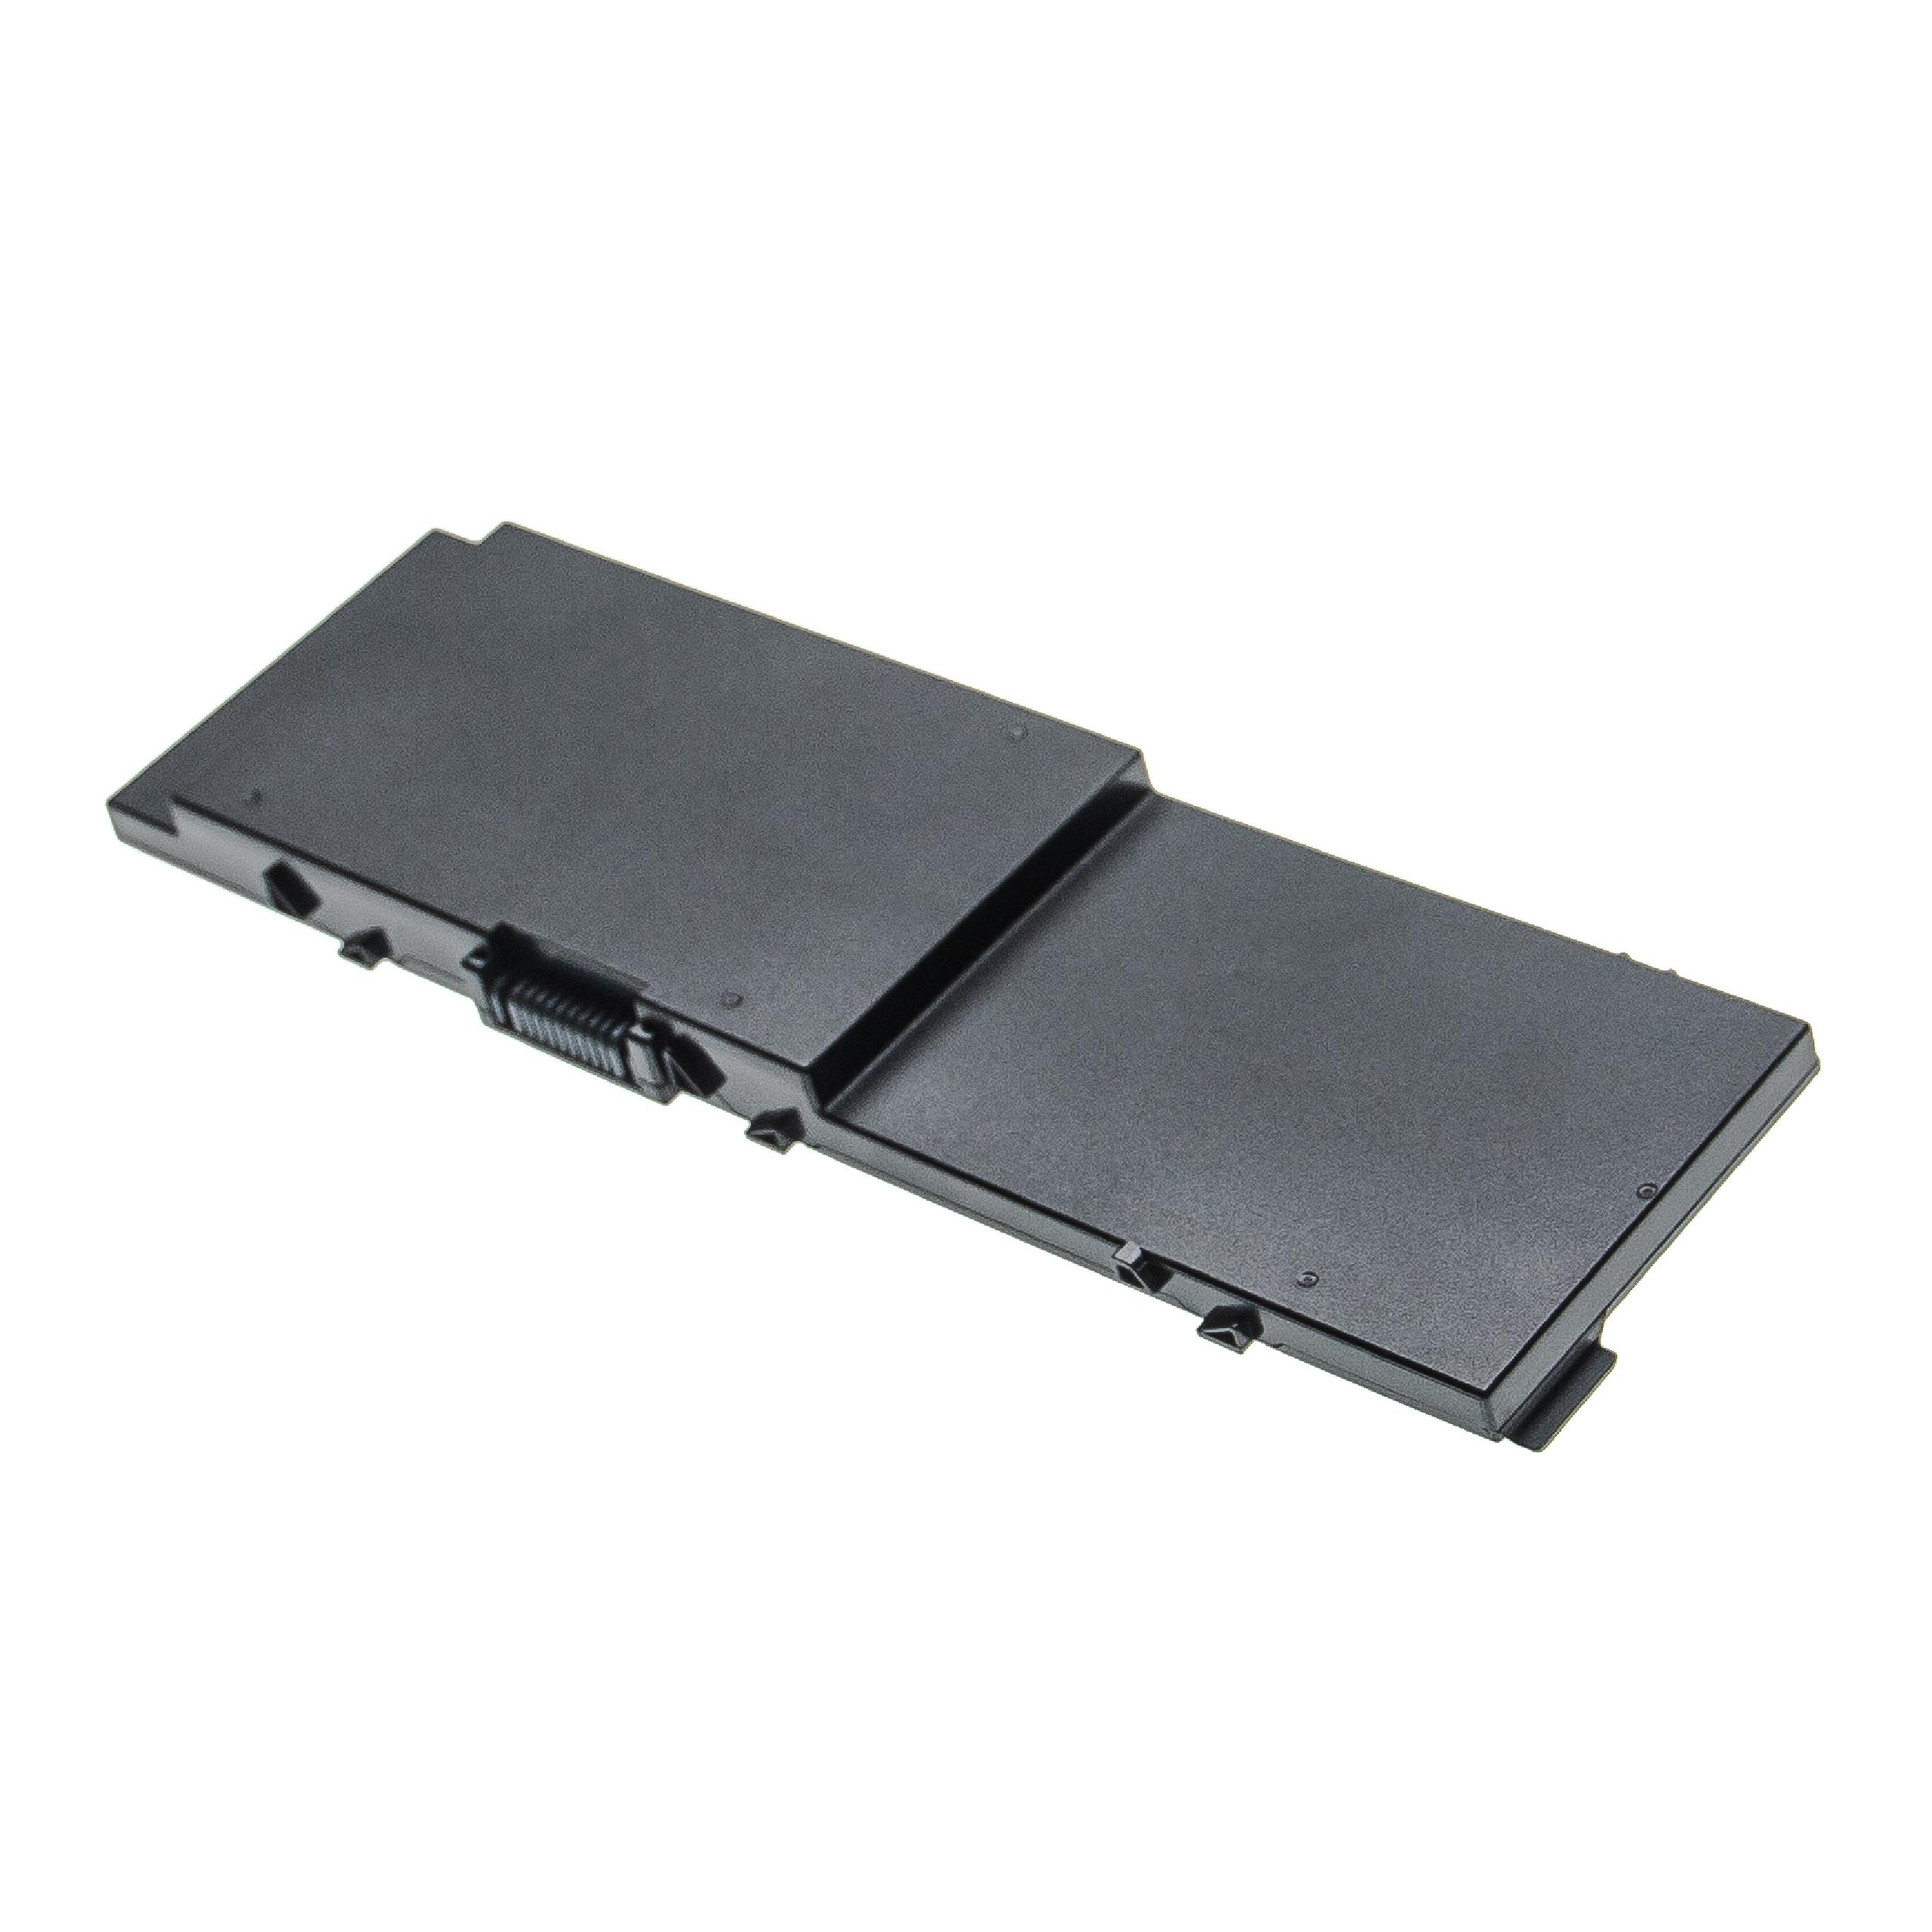 Akumulator do laptopa zamiennik Dell 0FNY7, 1G9VM, 451-BBSB, 451-BBSE - 7900 mAh 11,1 V Li-Ion, czarny